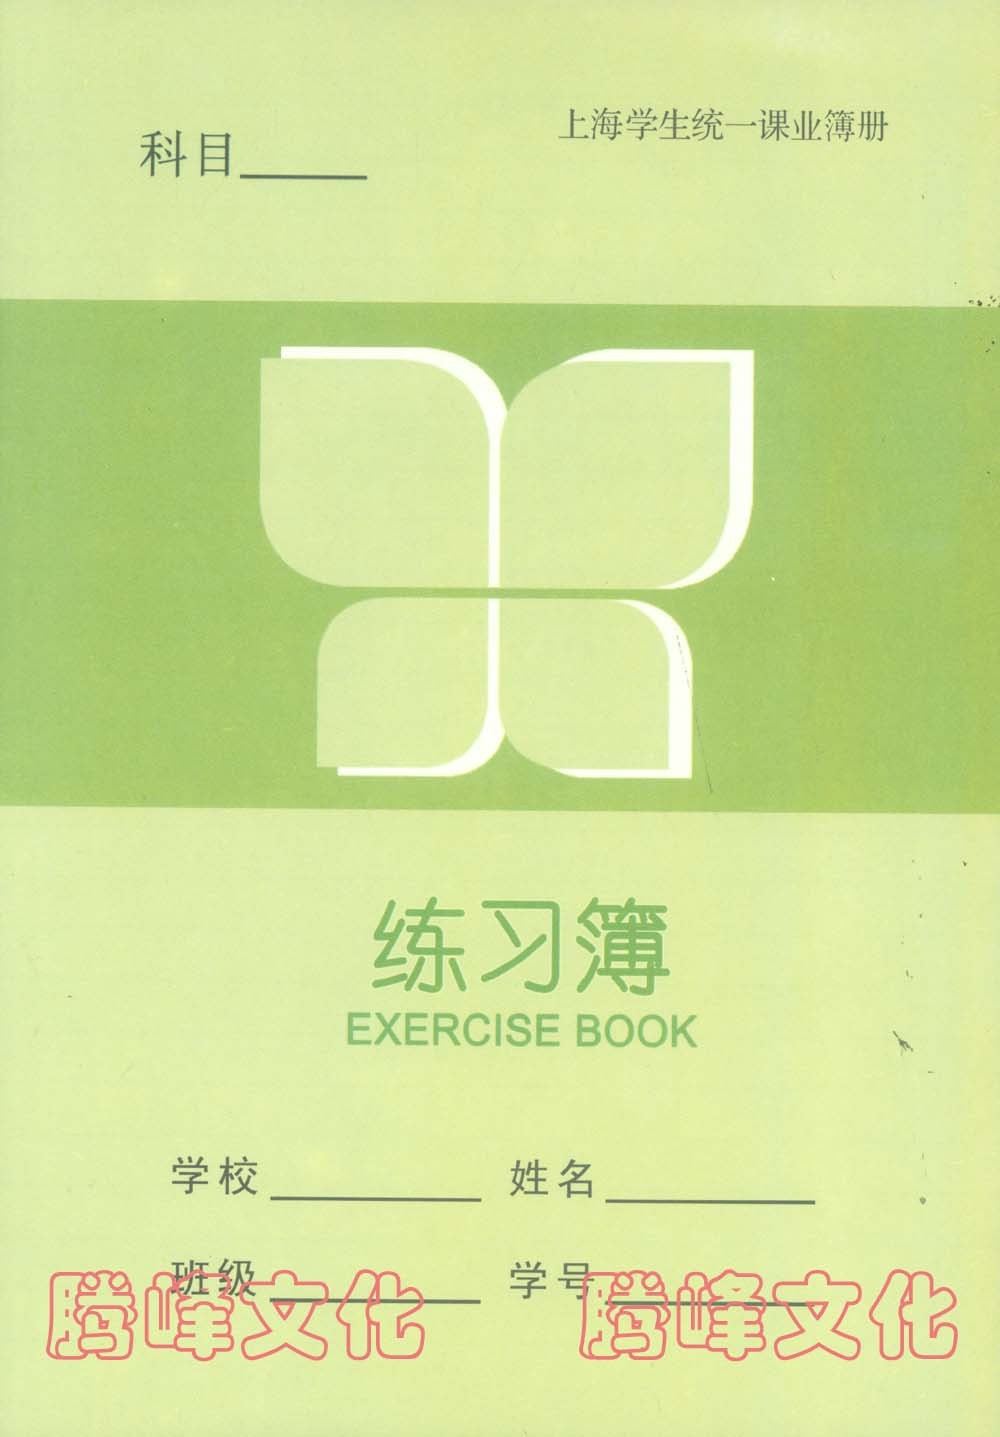 正版上海学生统一课业簿册 练习簿 K101-1|一淘